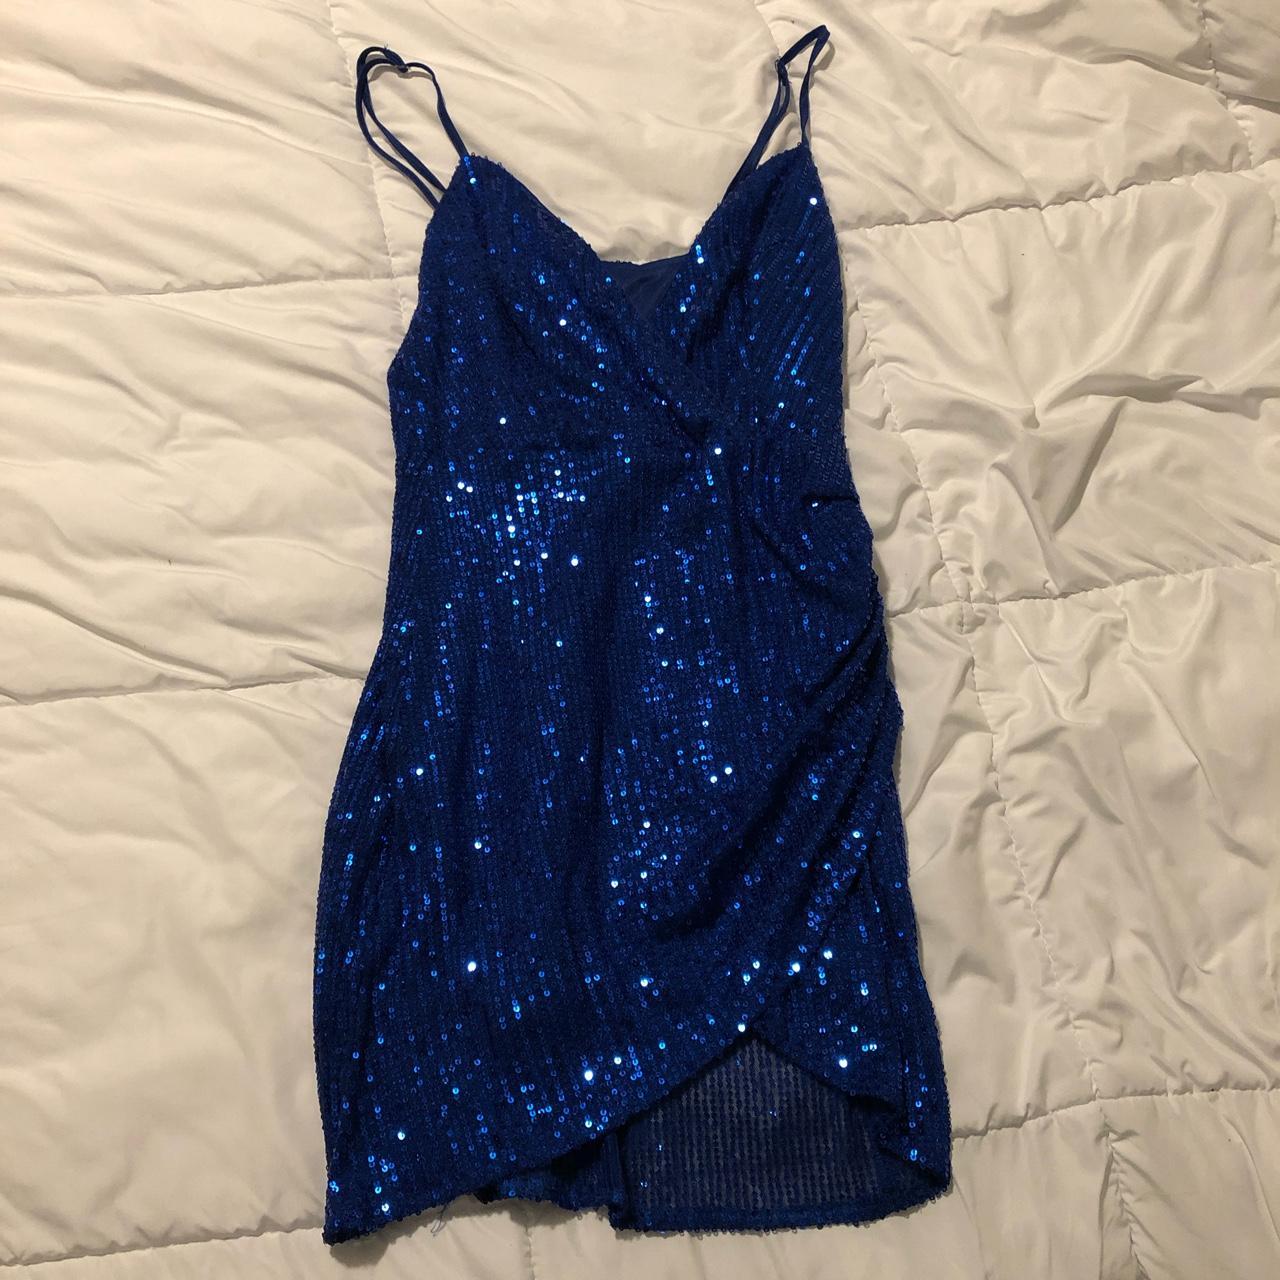 Small blue party mini dress. - Depop